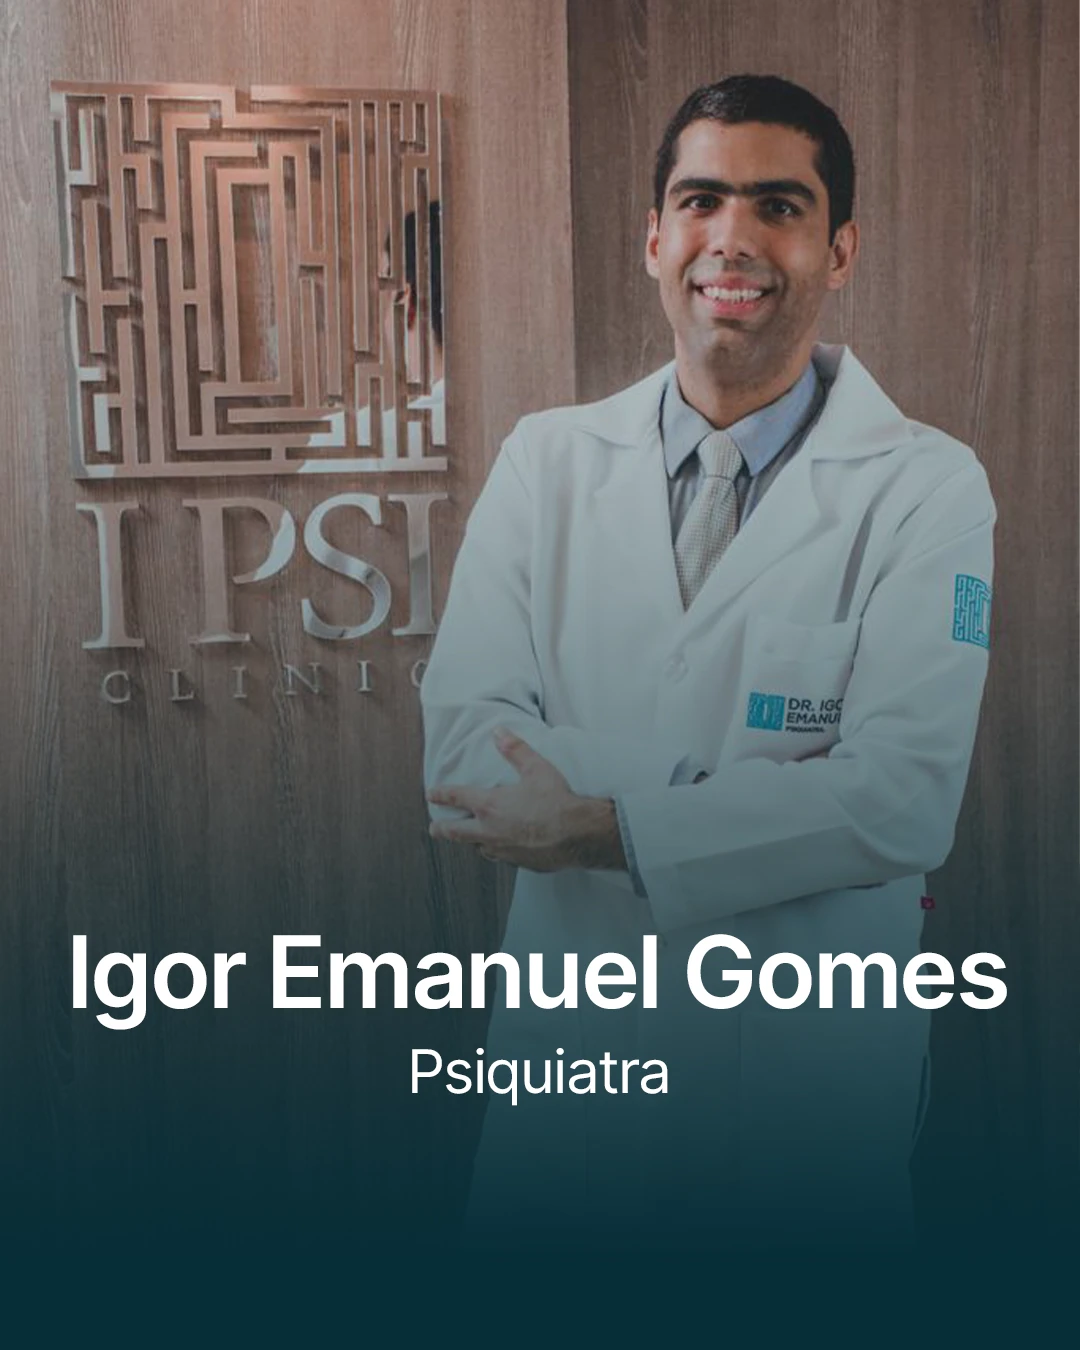 Igor Emanuel Gomes